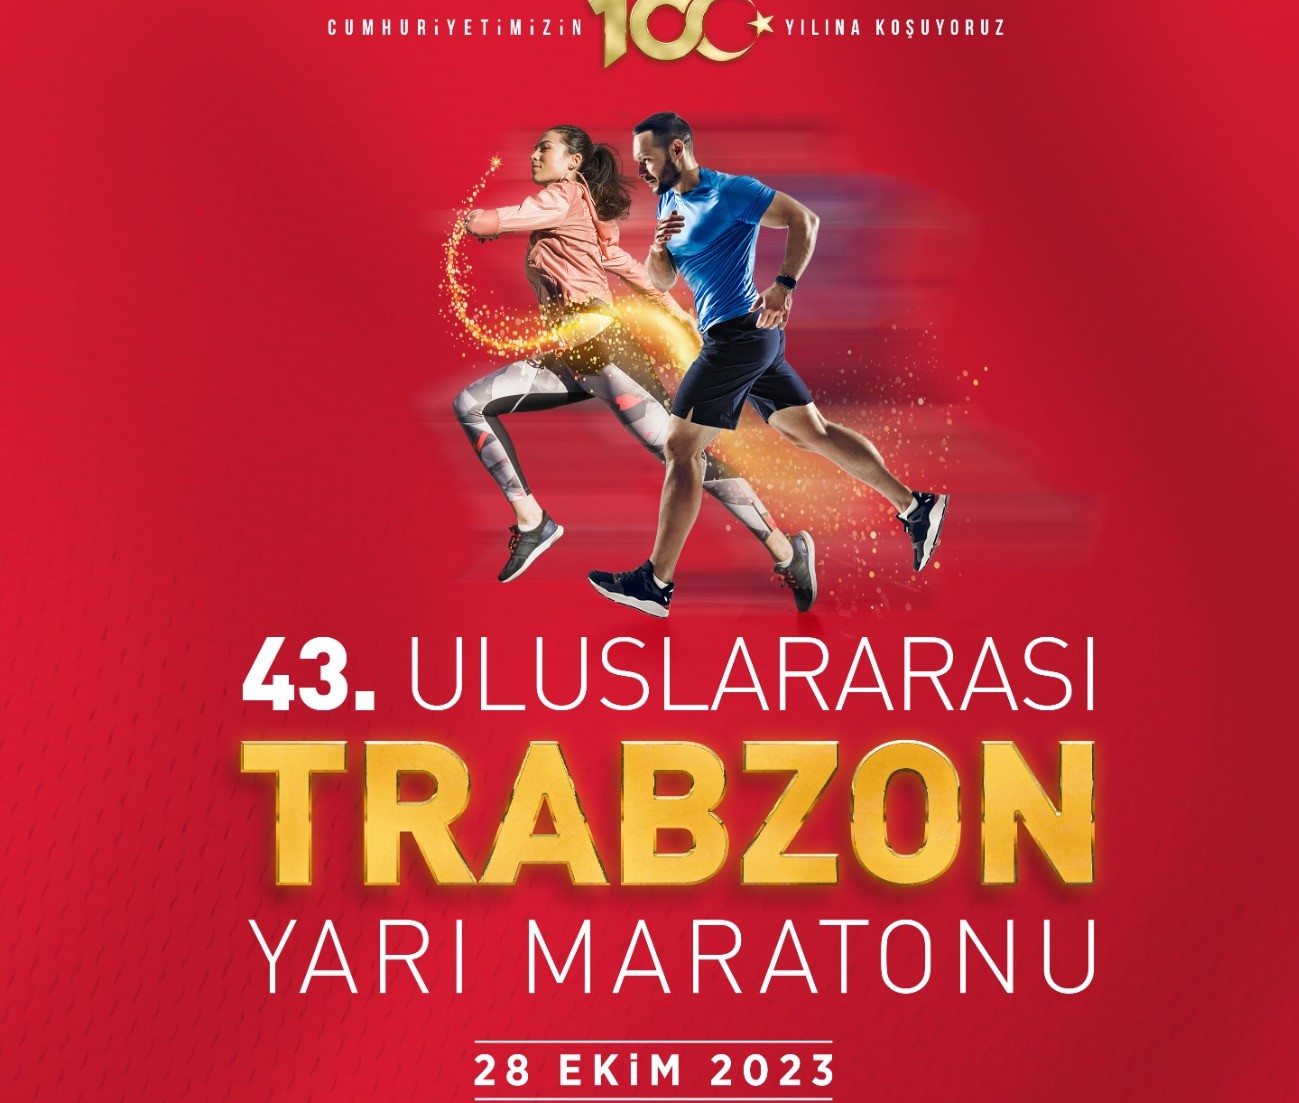 Uluslararası Trabzon Yarı Maratonu 28 Ekim'de Koşulacak